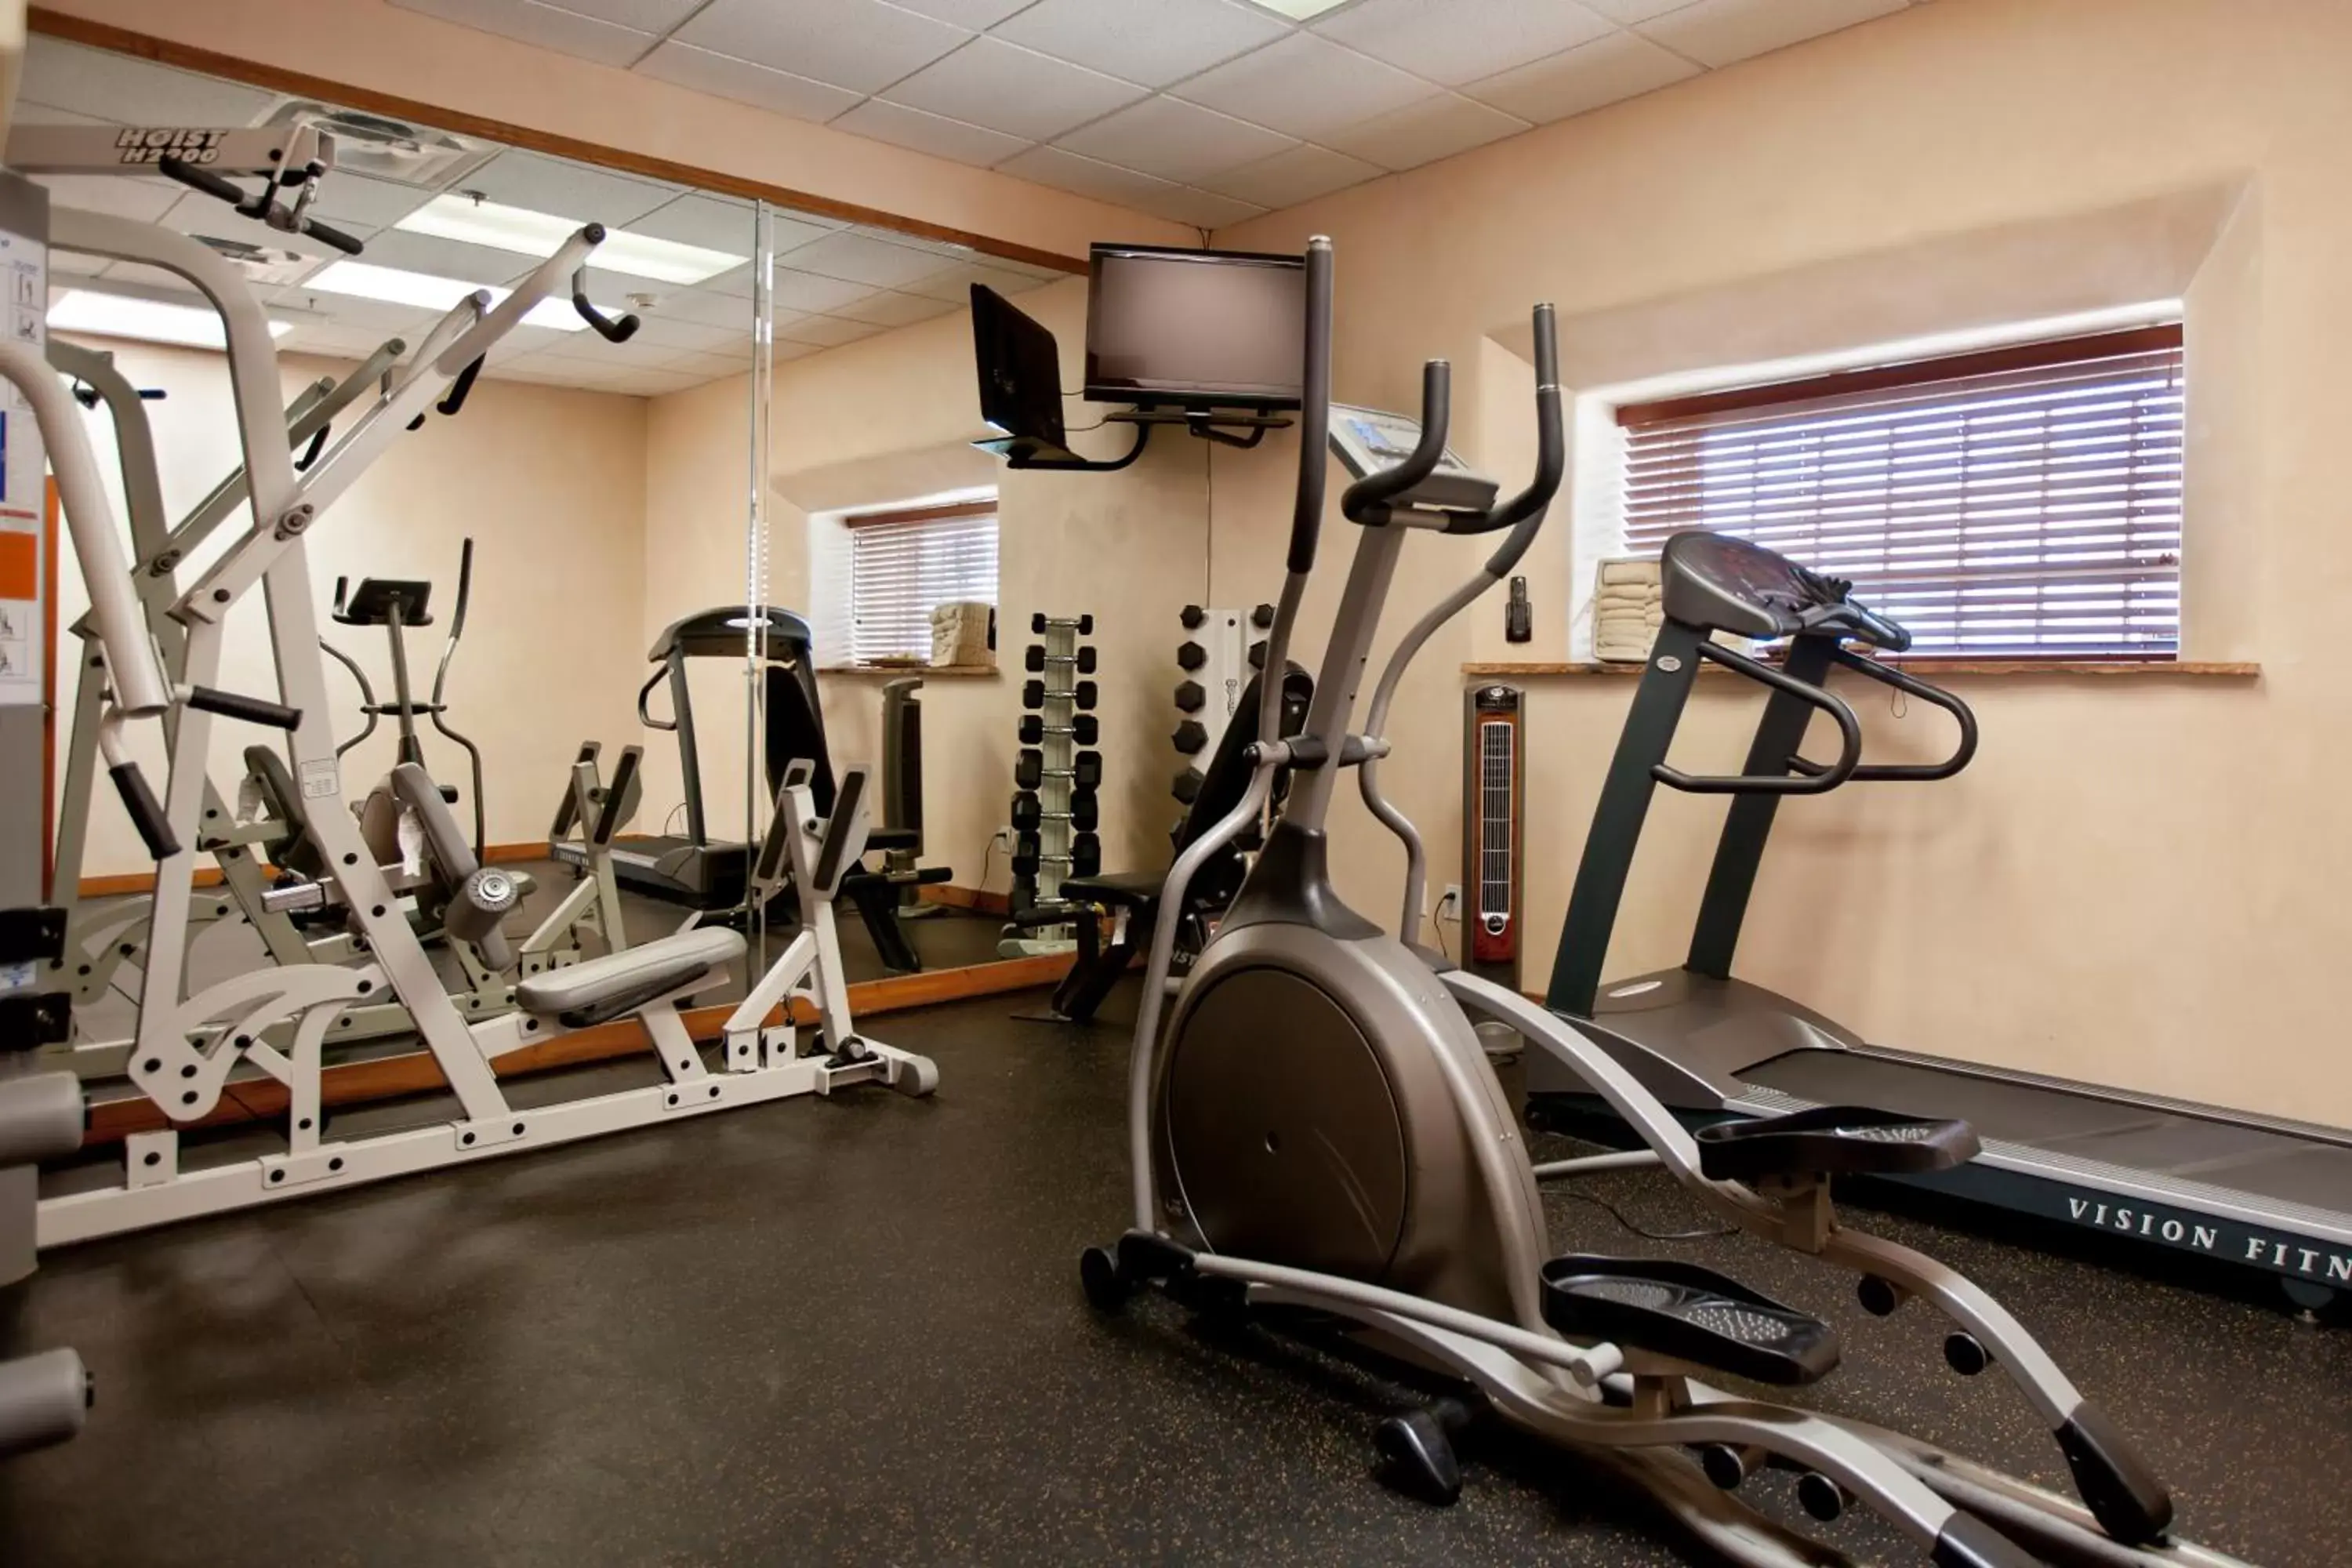 Fitness centre/facilities, Fitness Center/Facilities in Old Santa Fe Inn